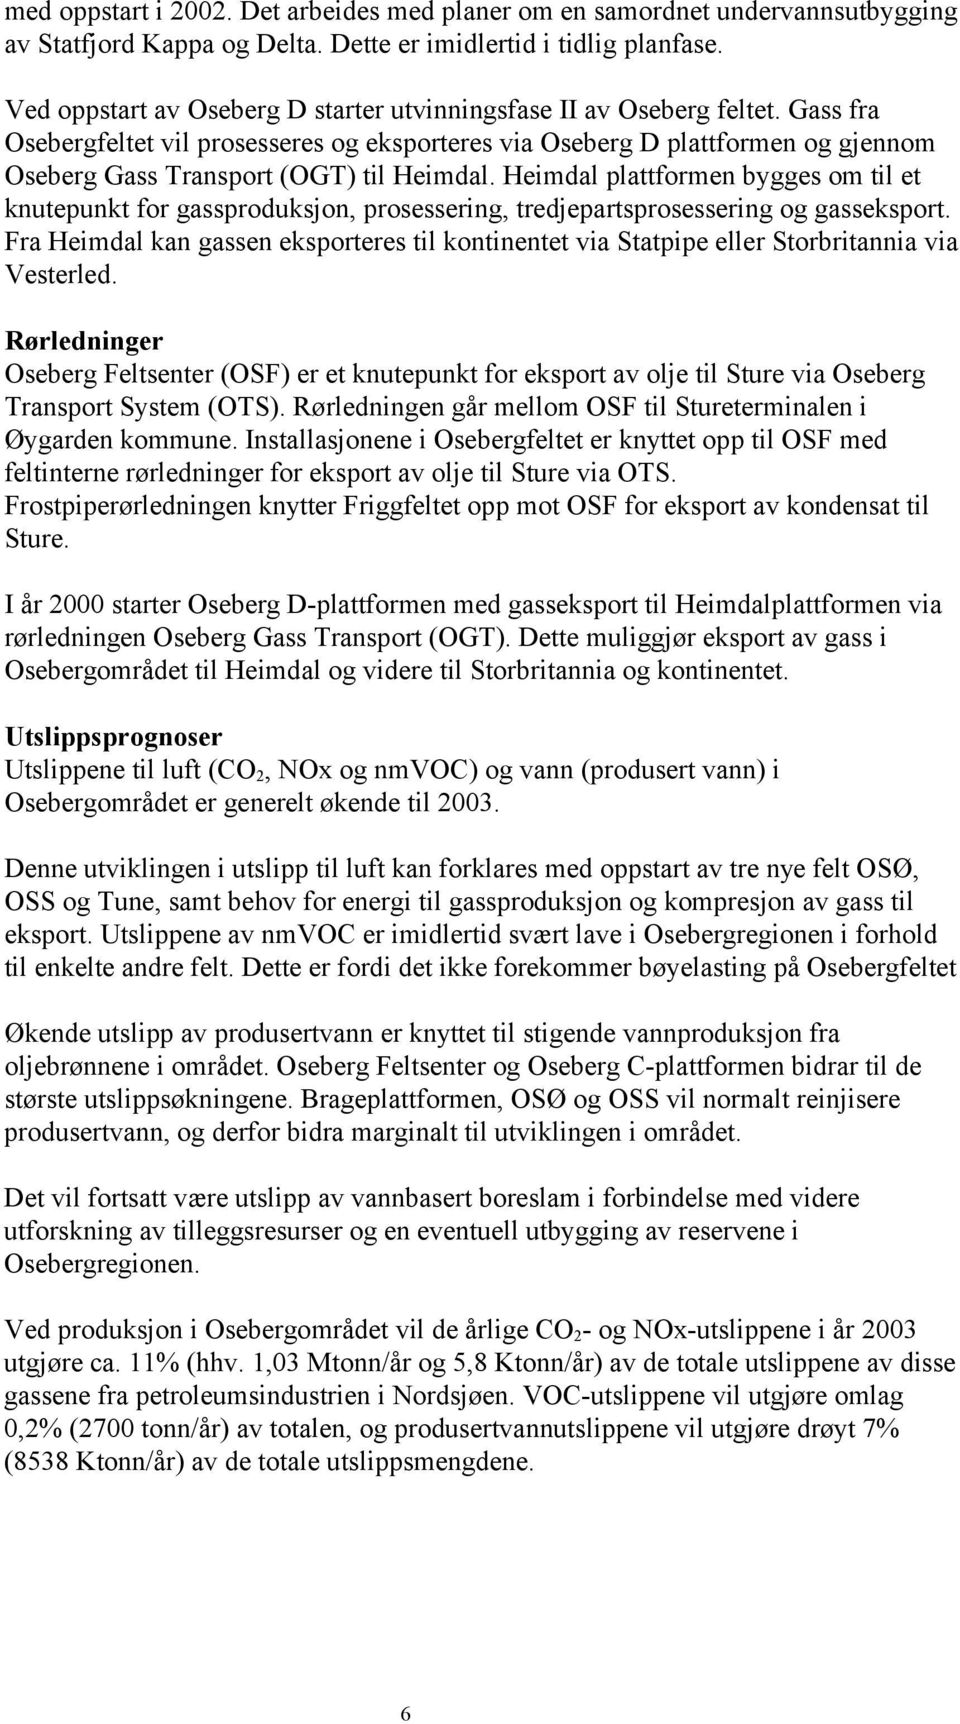 Gass fra Osebergfeltet vil prosesseres og eksporteres via Oseberg D plattformen og gjennom Oseberg Gass Transport (OGT) til Heimdal.